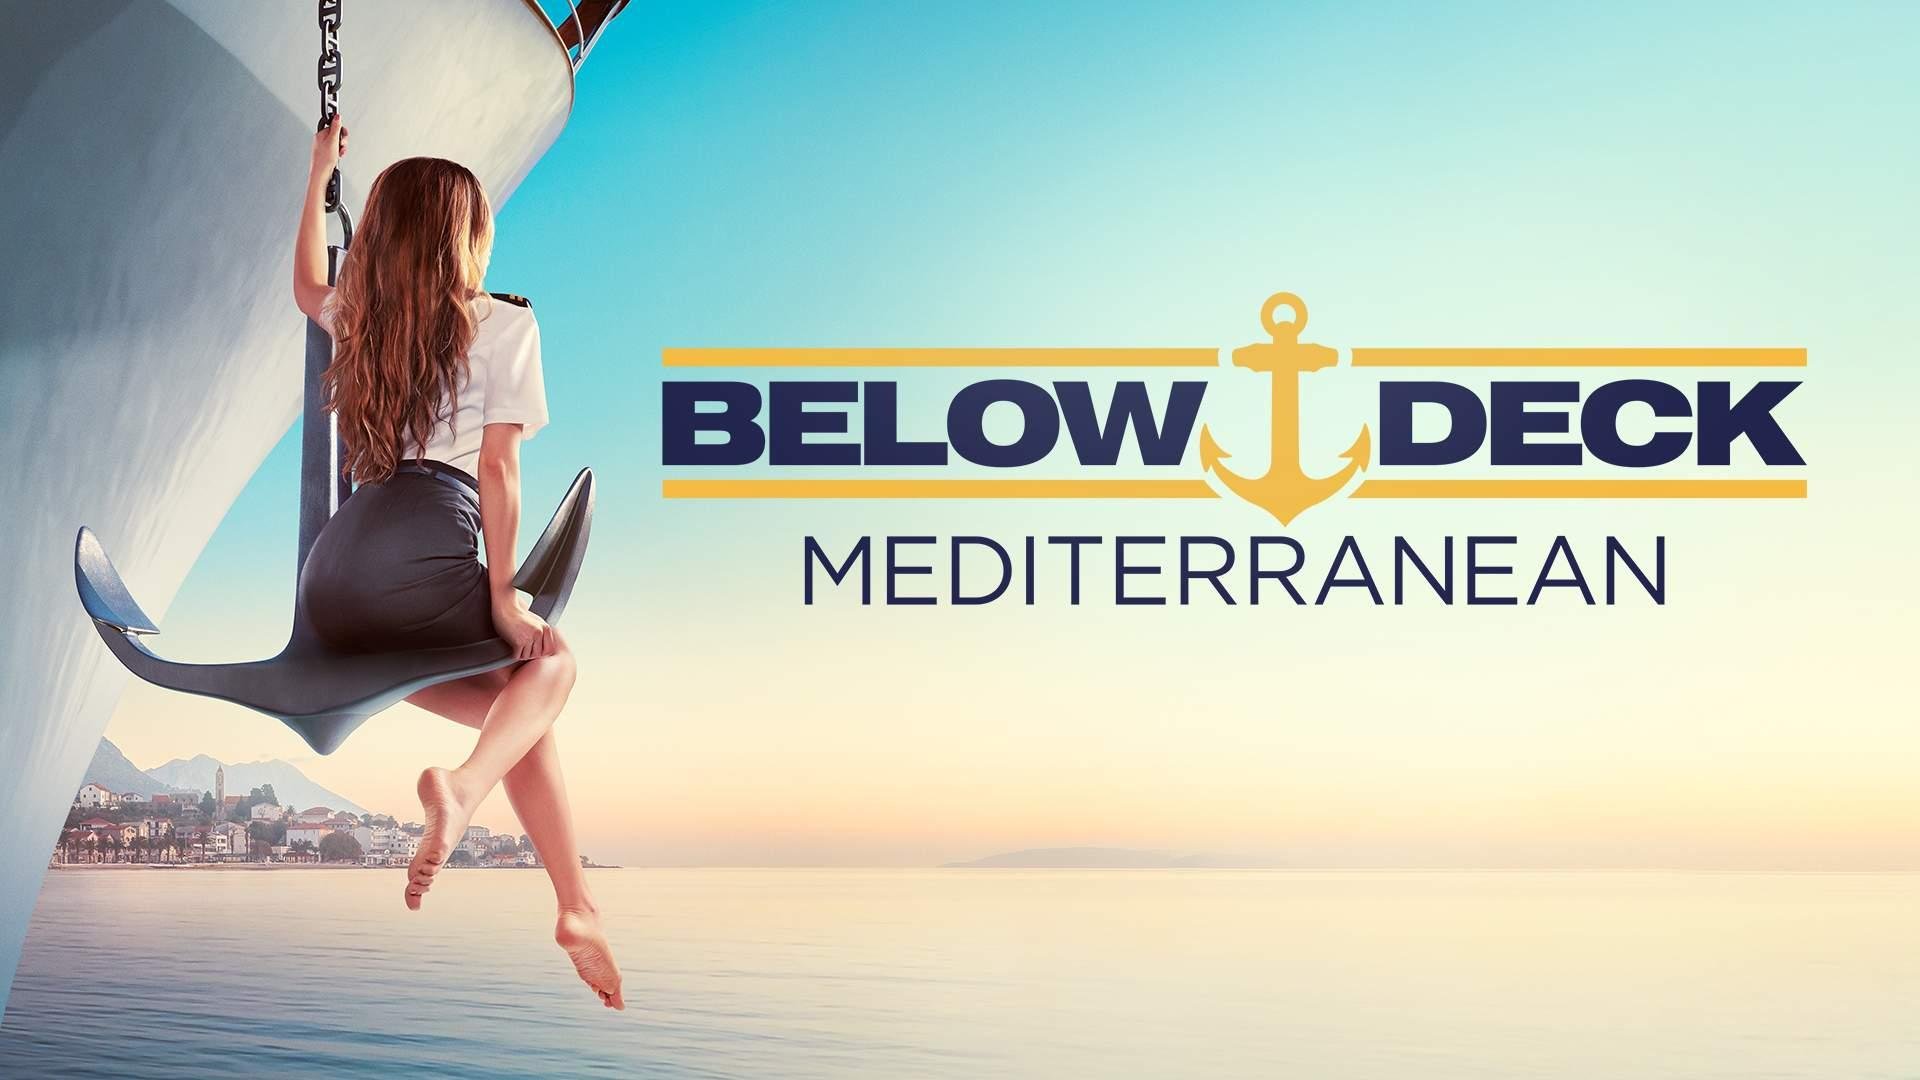 Watch Below Deck Mediterranean Season 5 Episode 10 Online - Stream Full